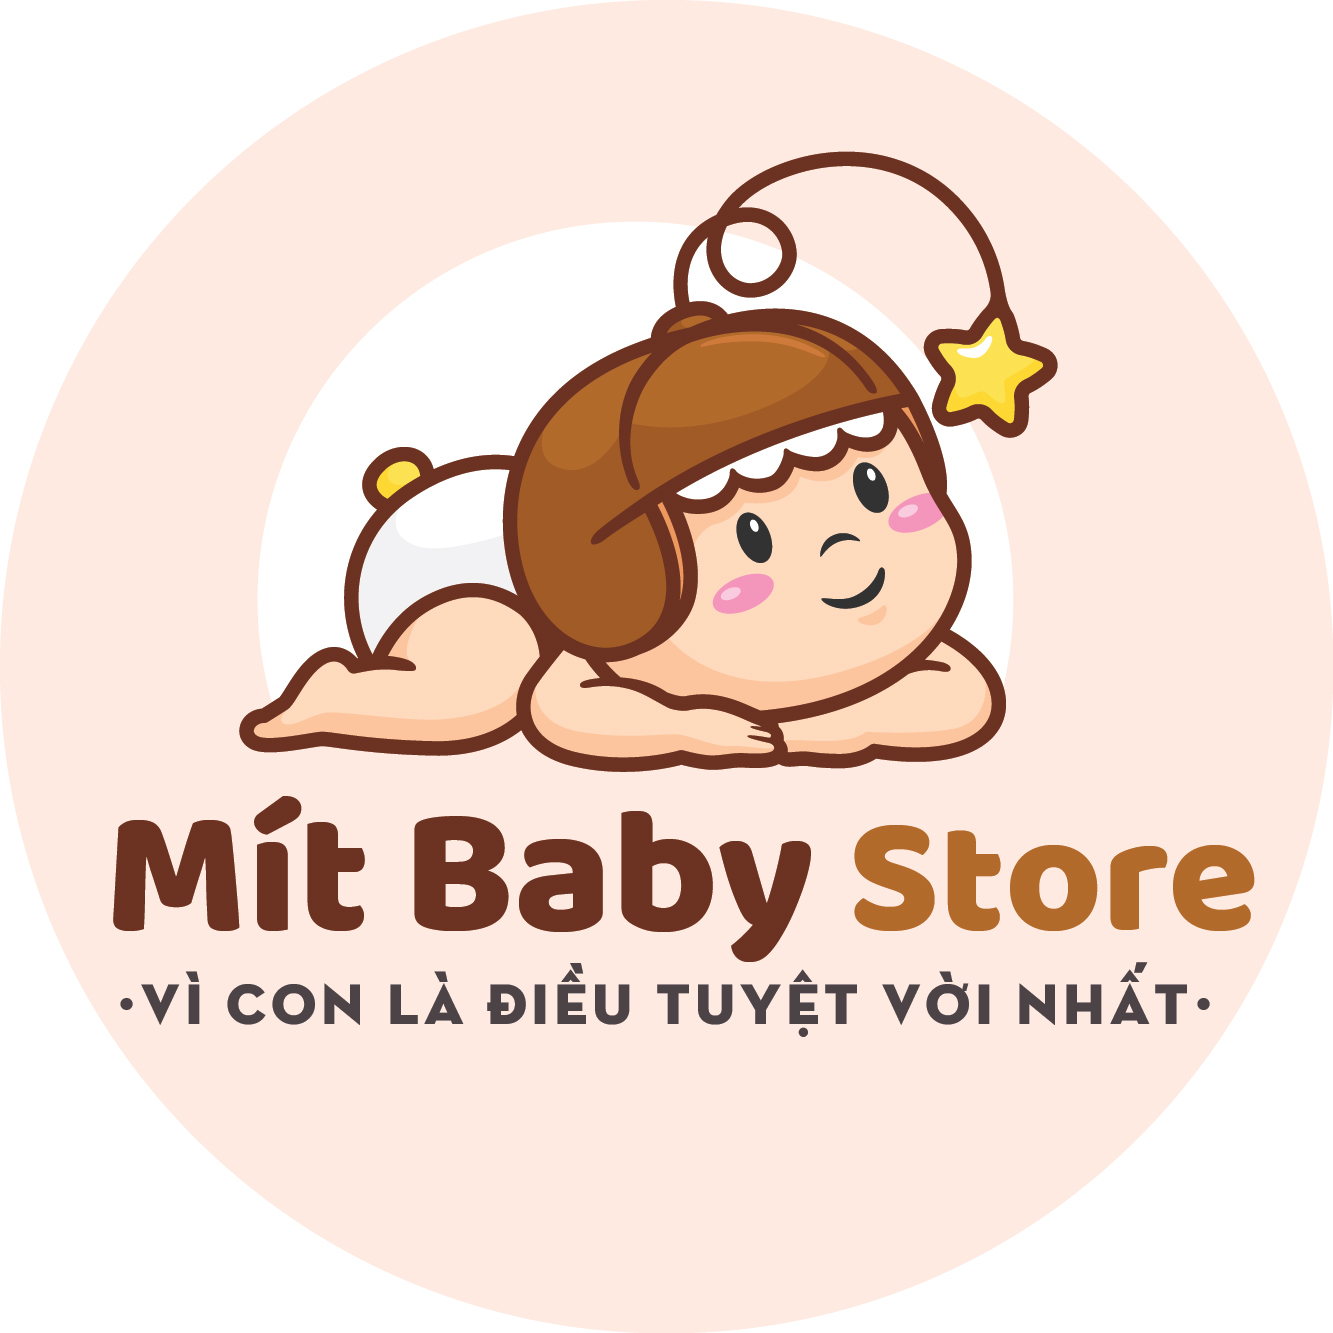 Mít Baby Store Đồ chơi thông minh